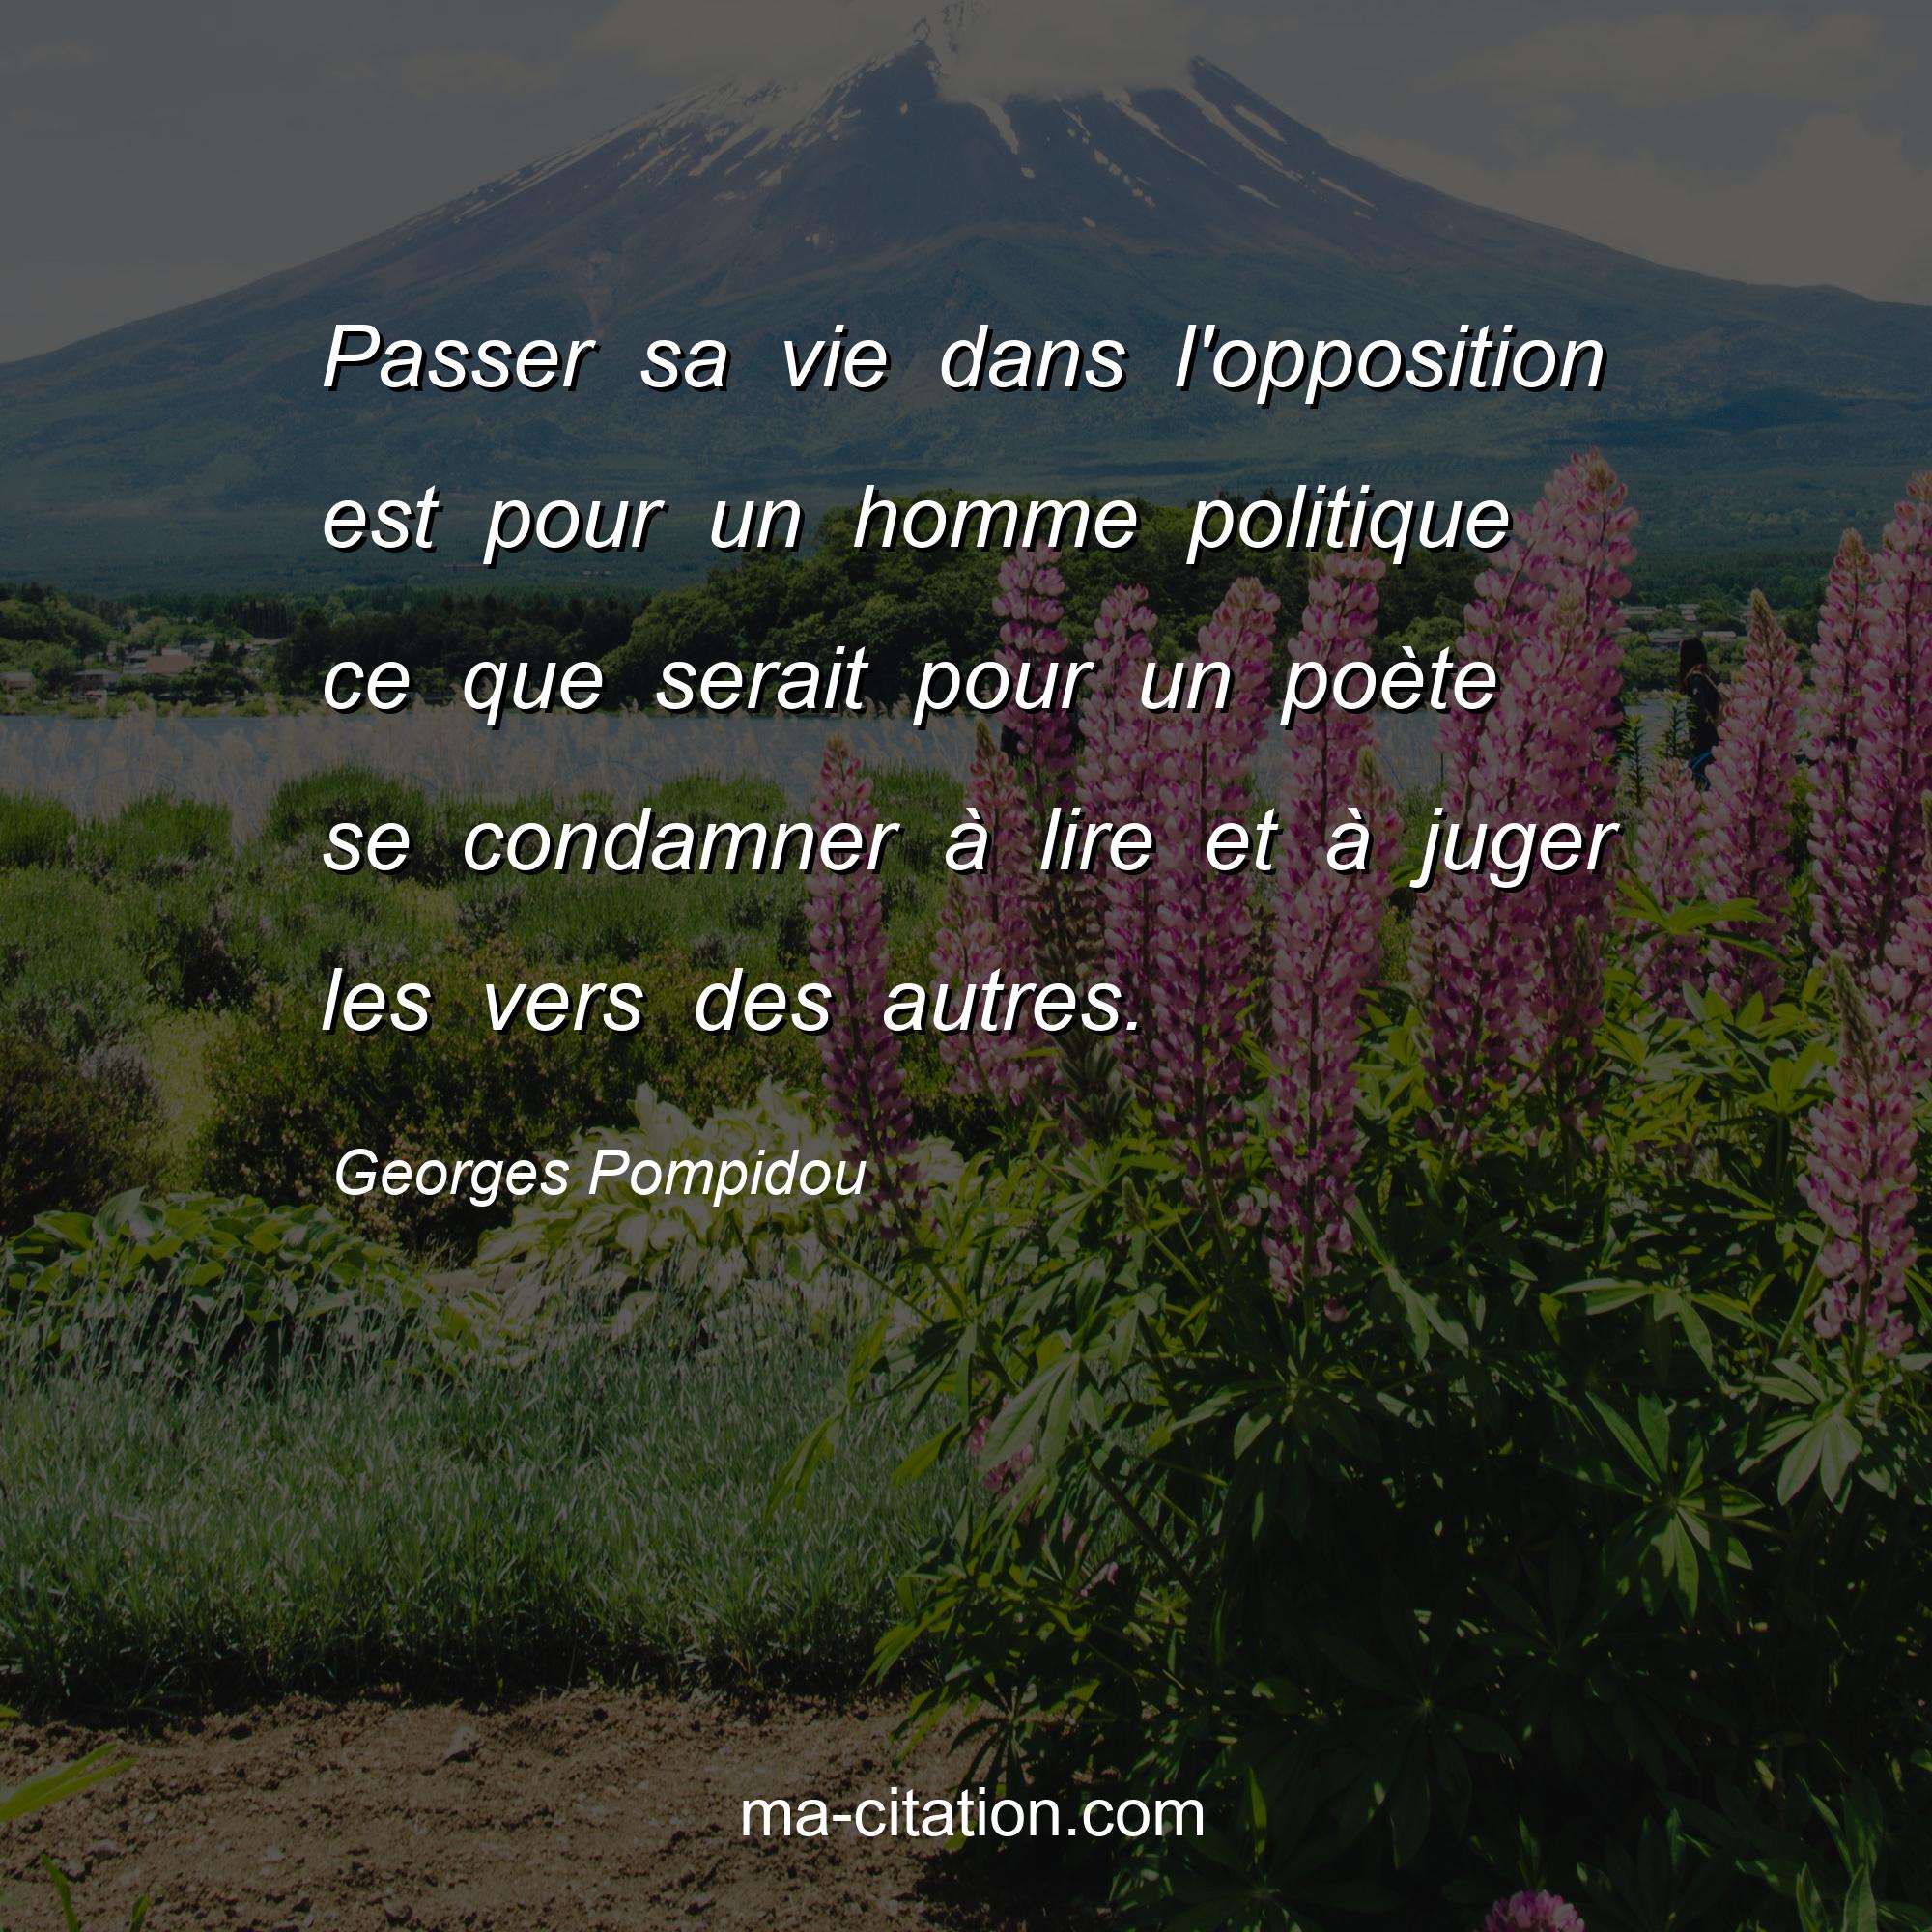 Georges Pompidou : Passer sa vie dans l'opposition est pour un homme politique ce que serait pour un poète se condamner à lire et à juger les vers des autres.